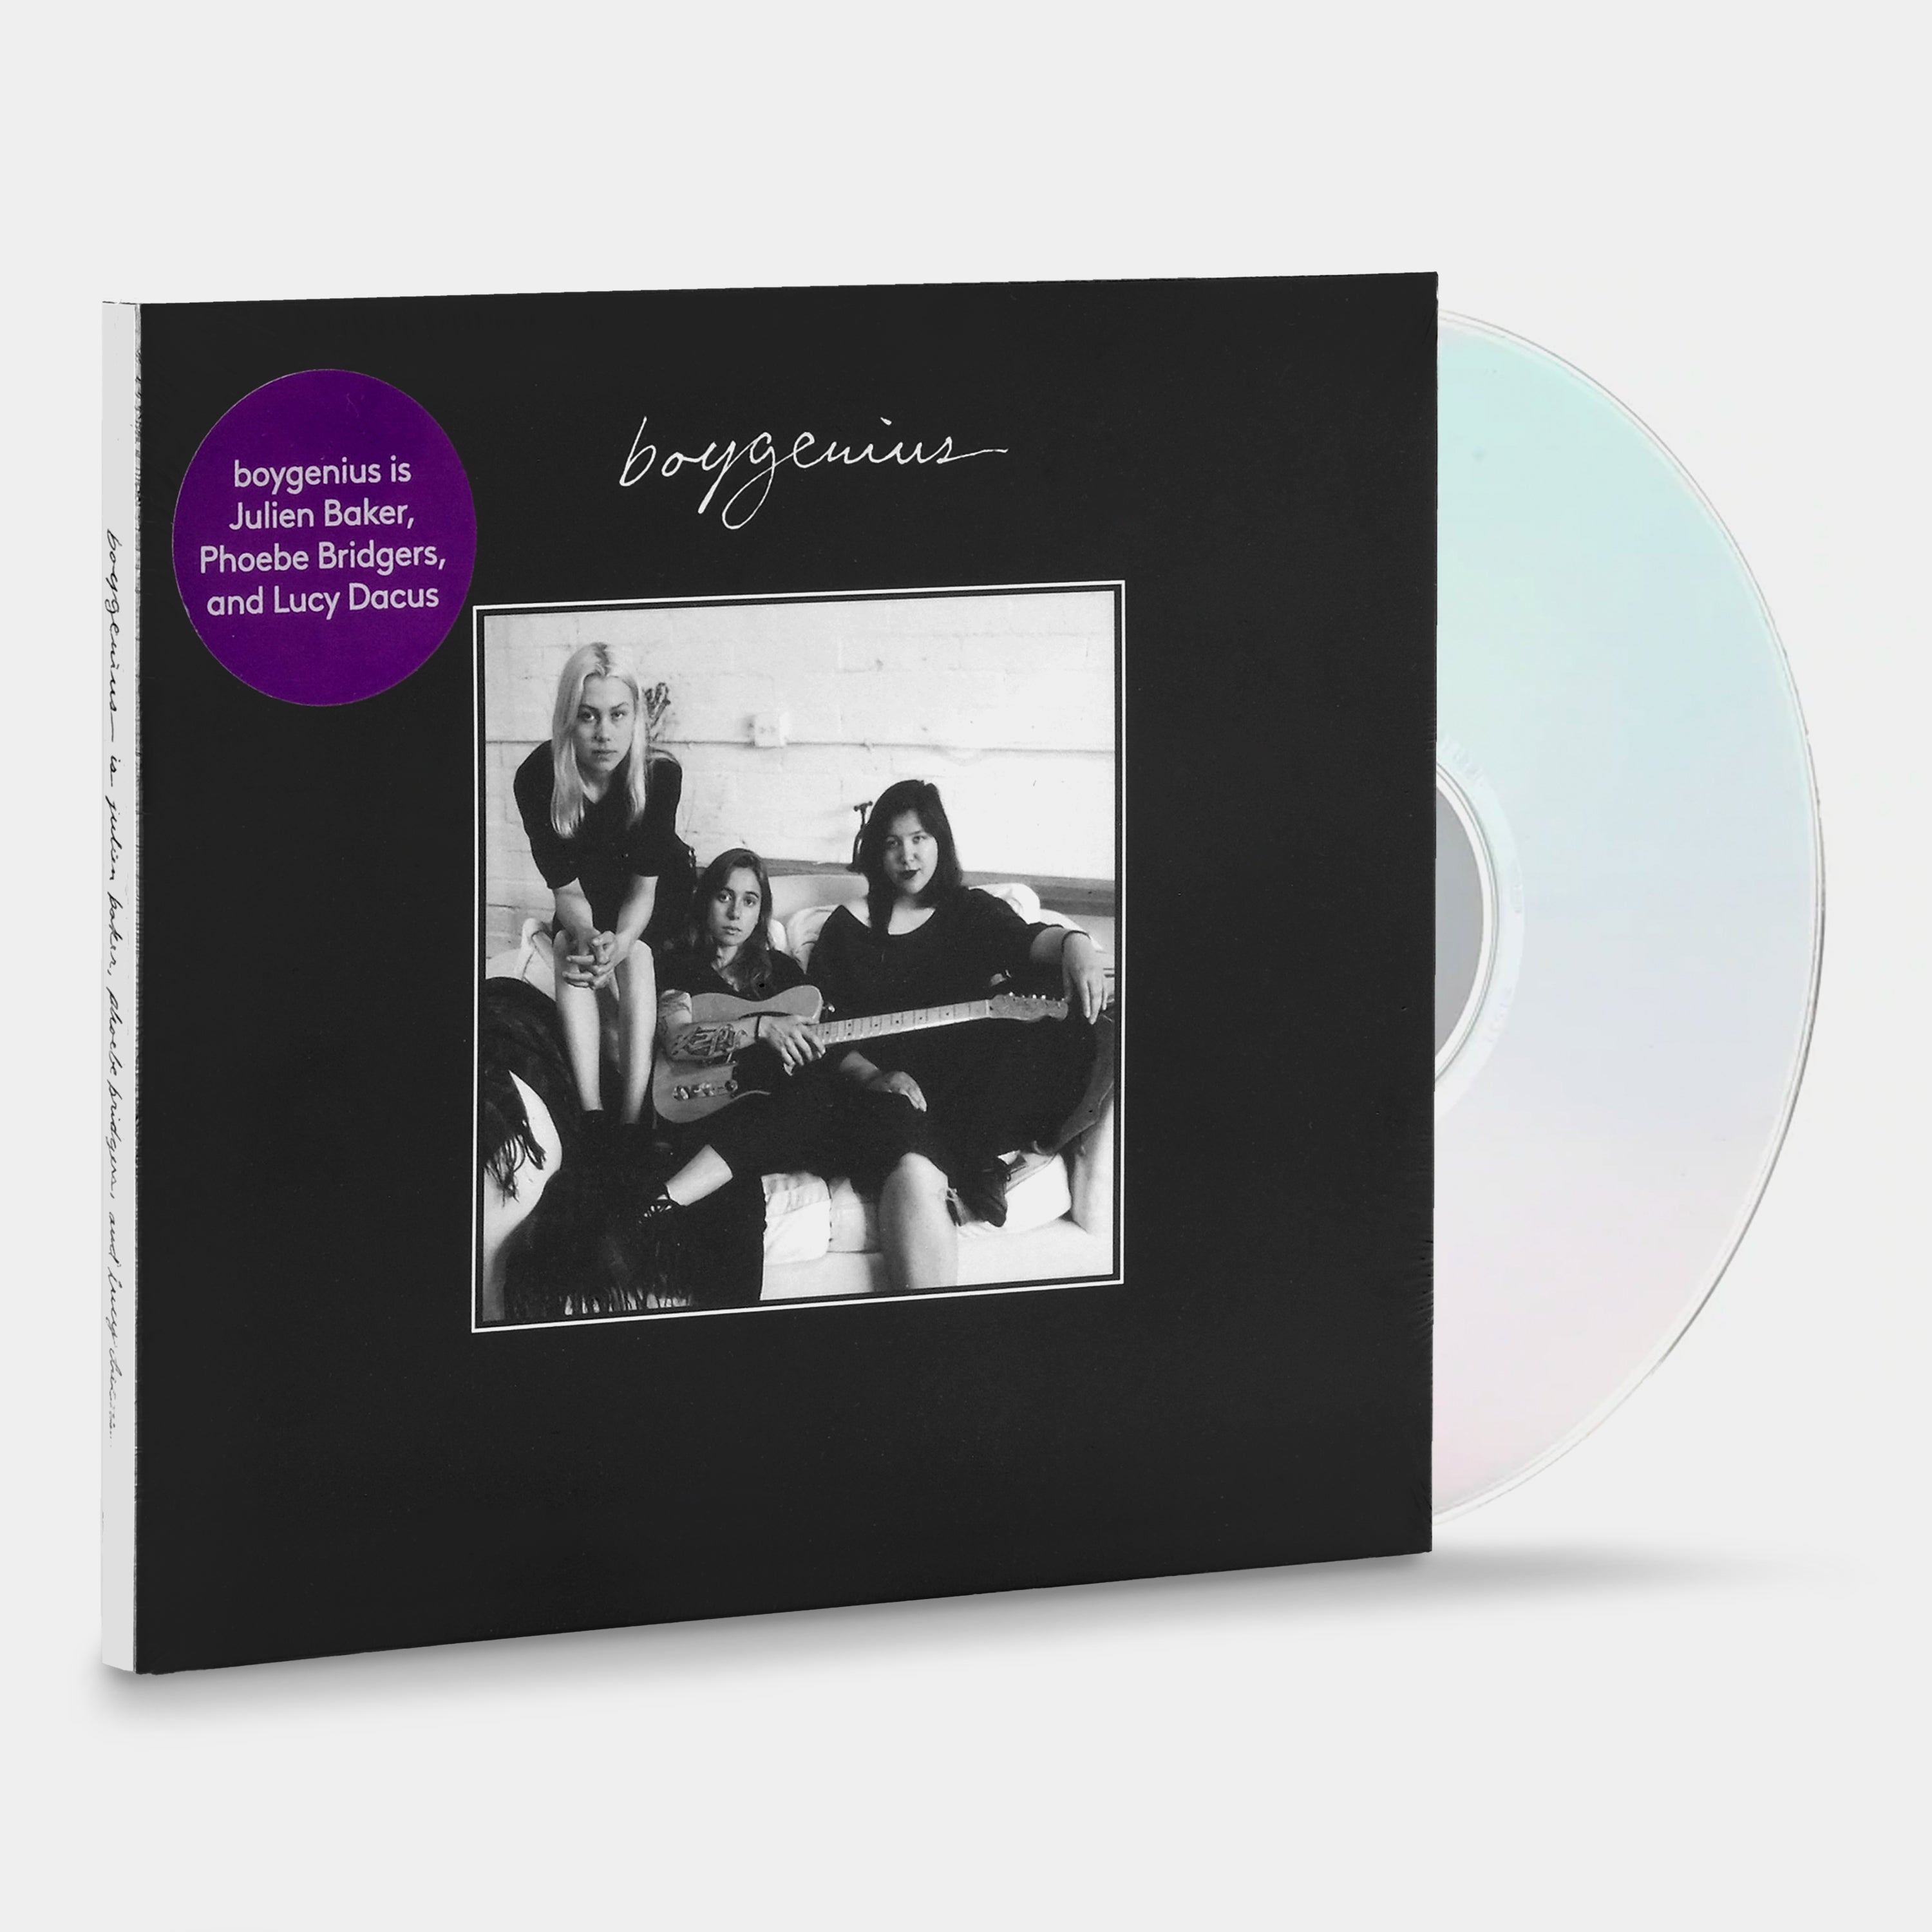 Boygenius - Boygenius CD